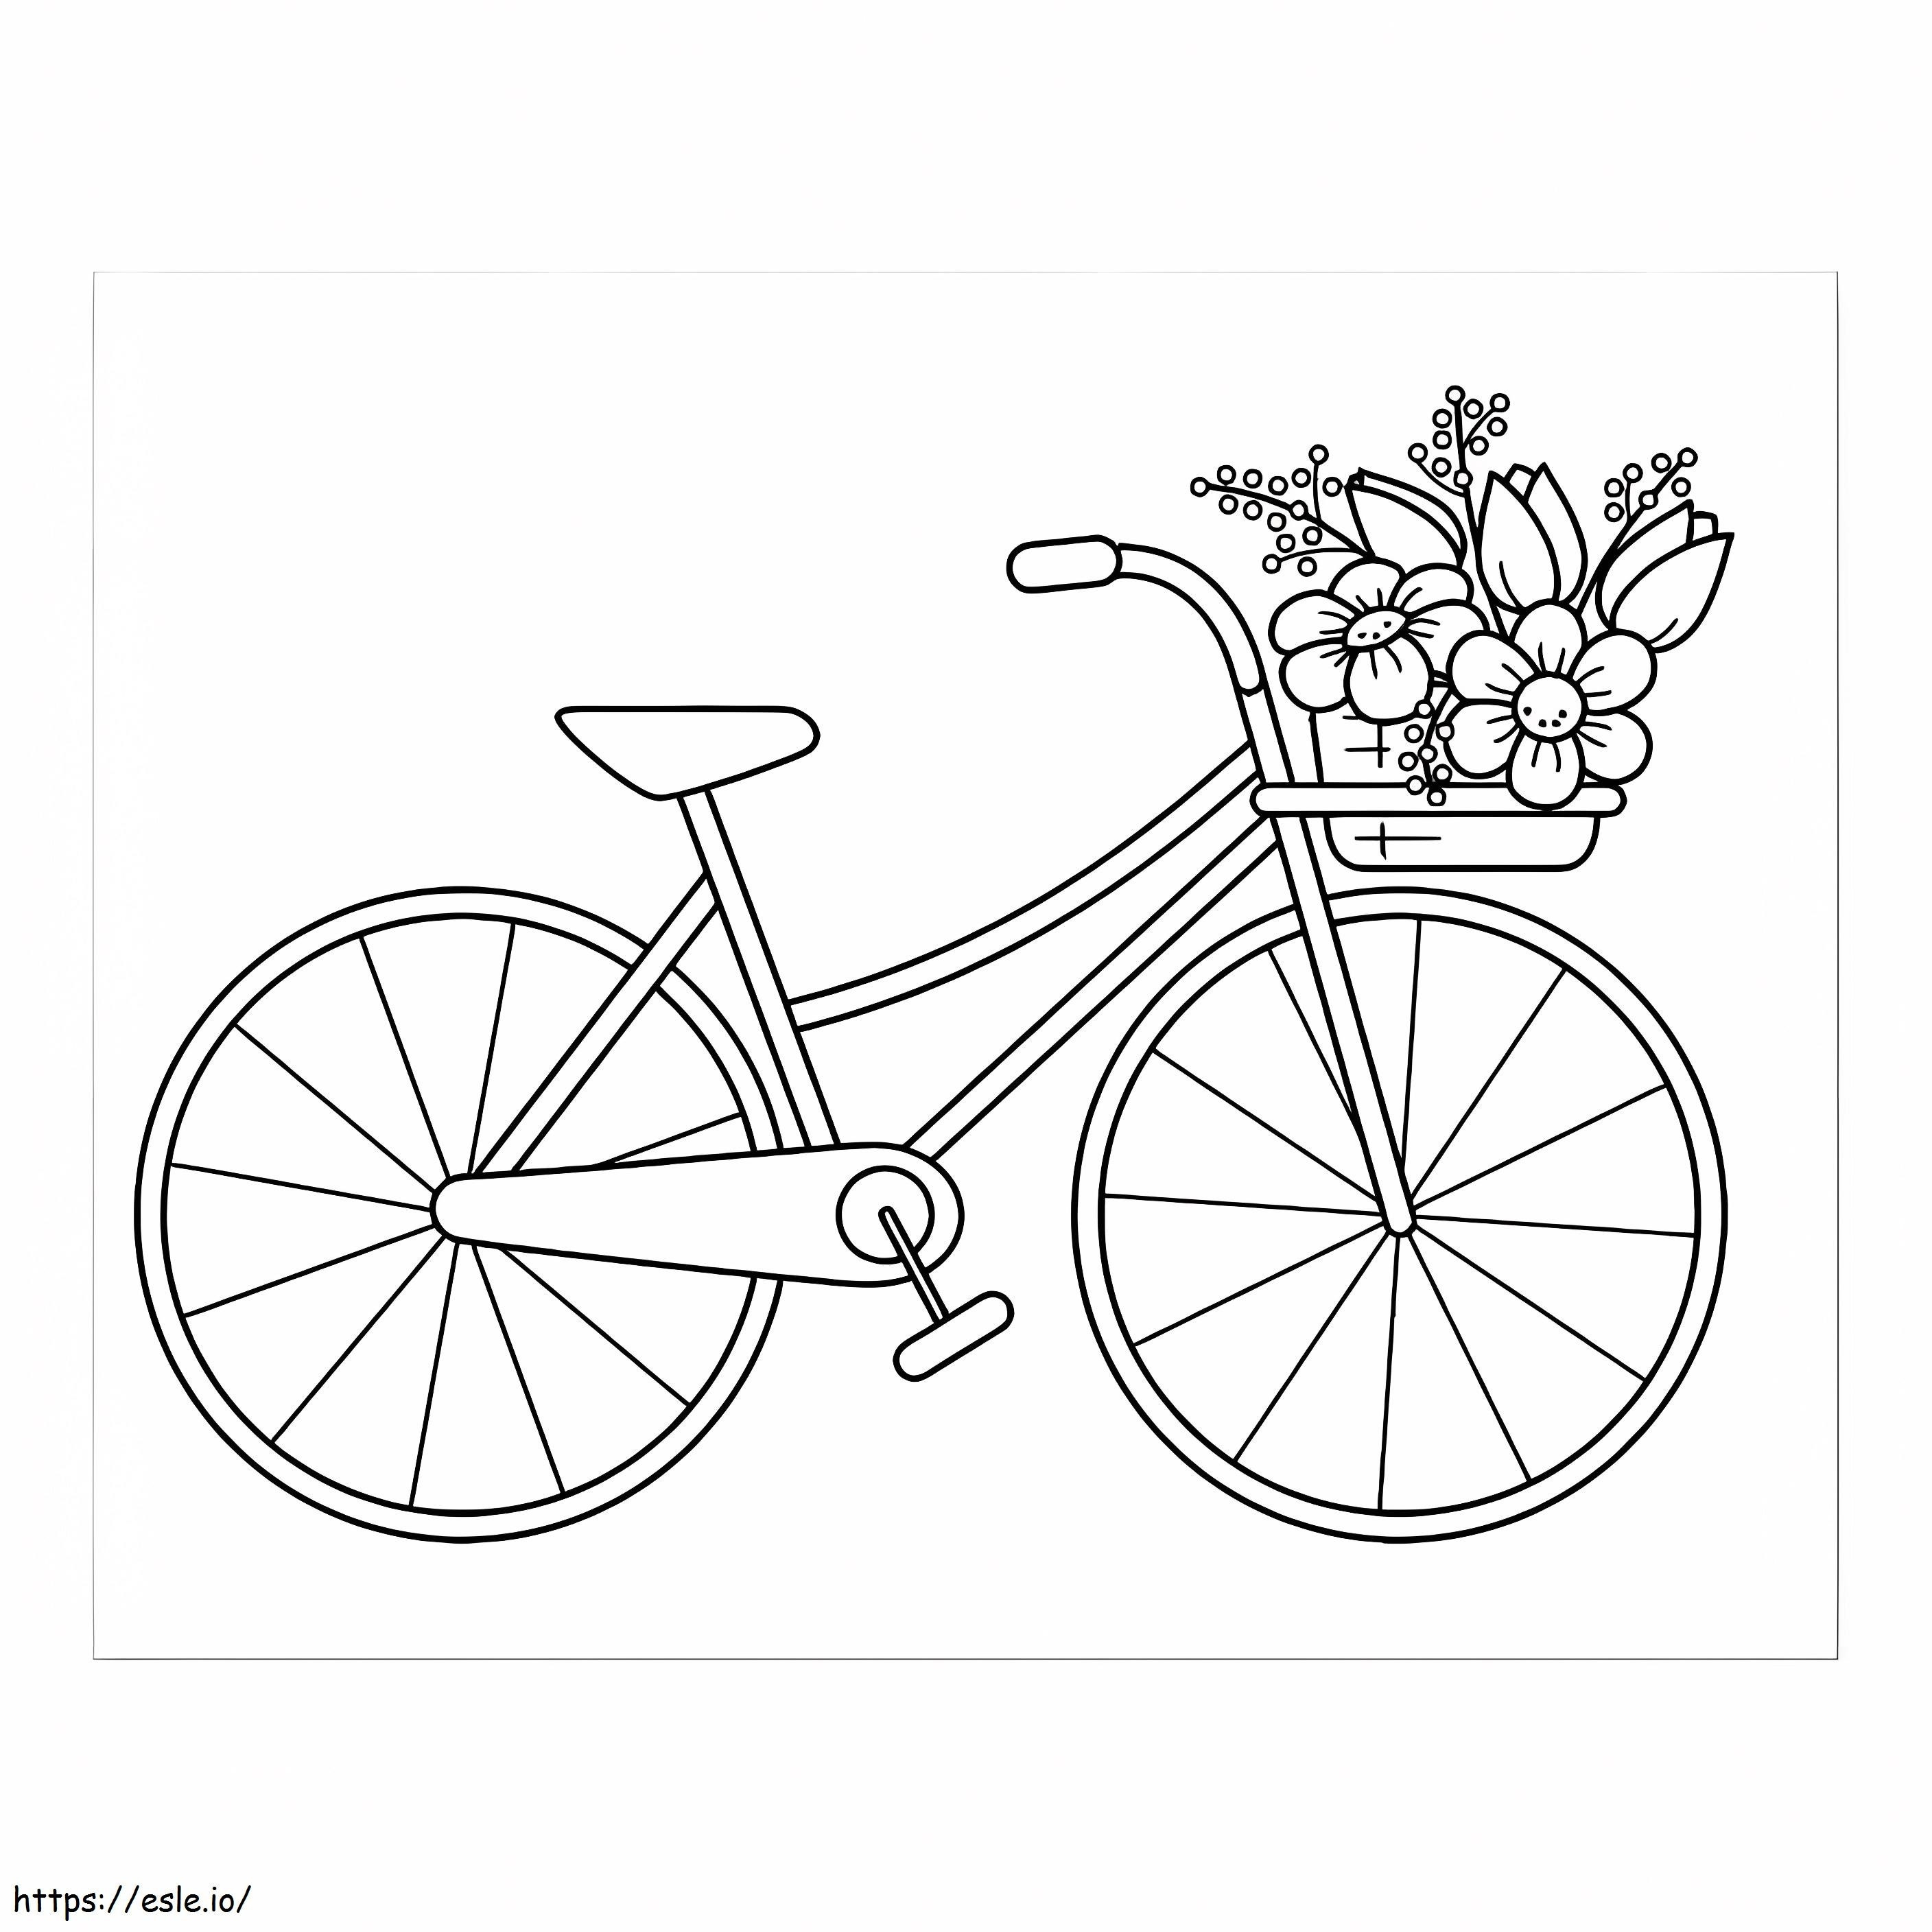 Bicicletă Cu Coș De Flori de colorat